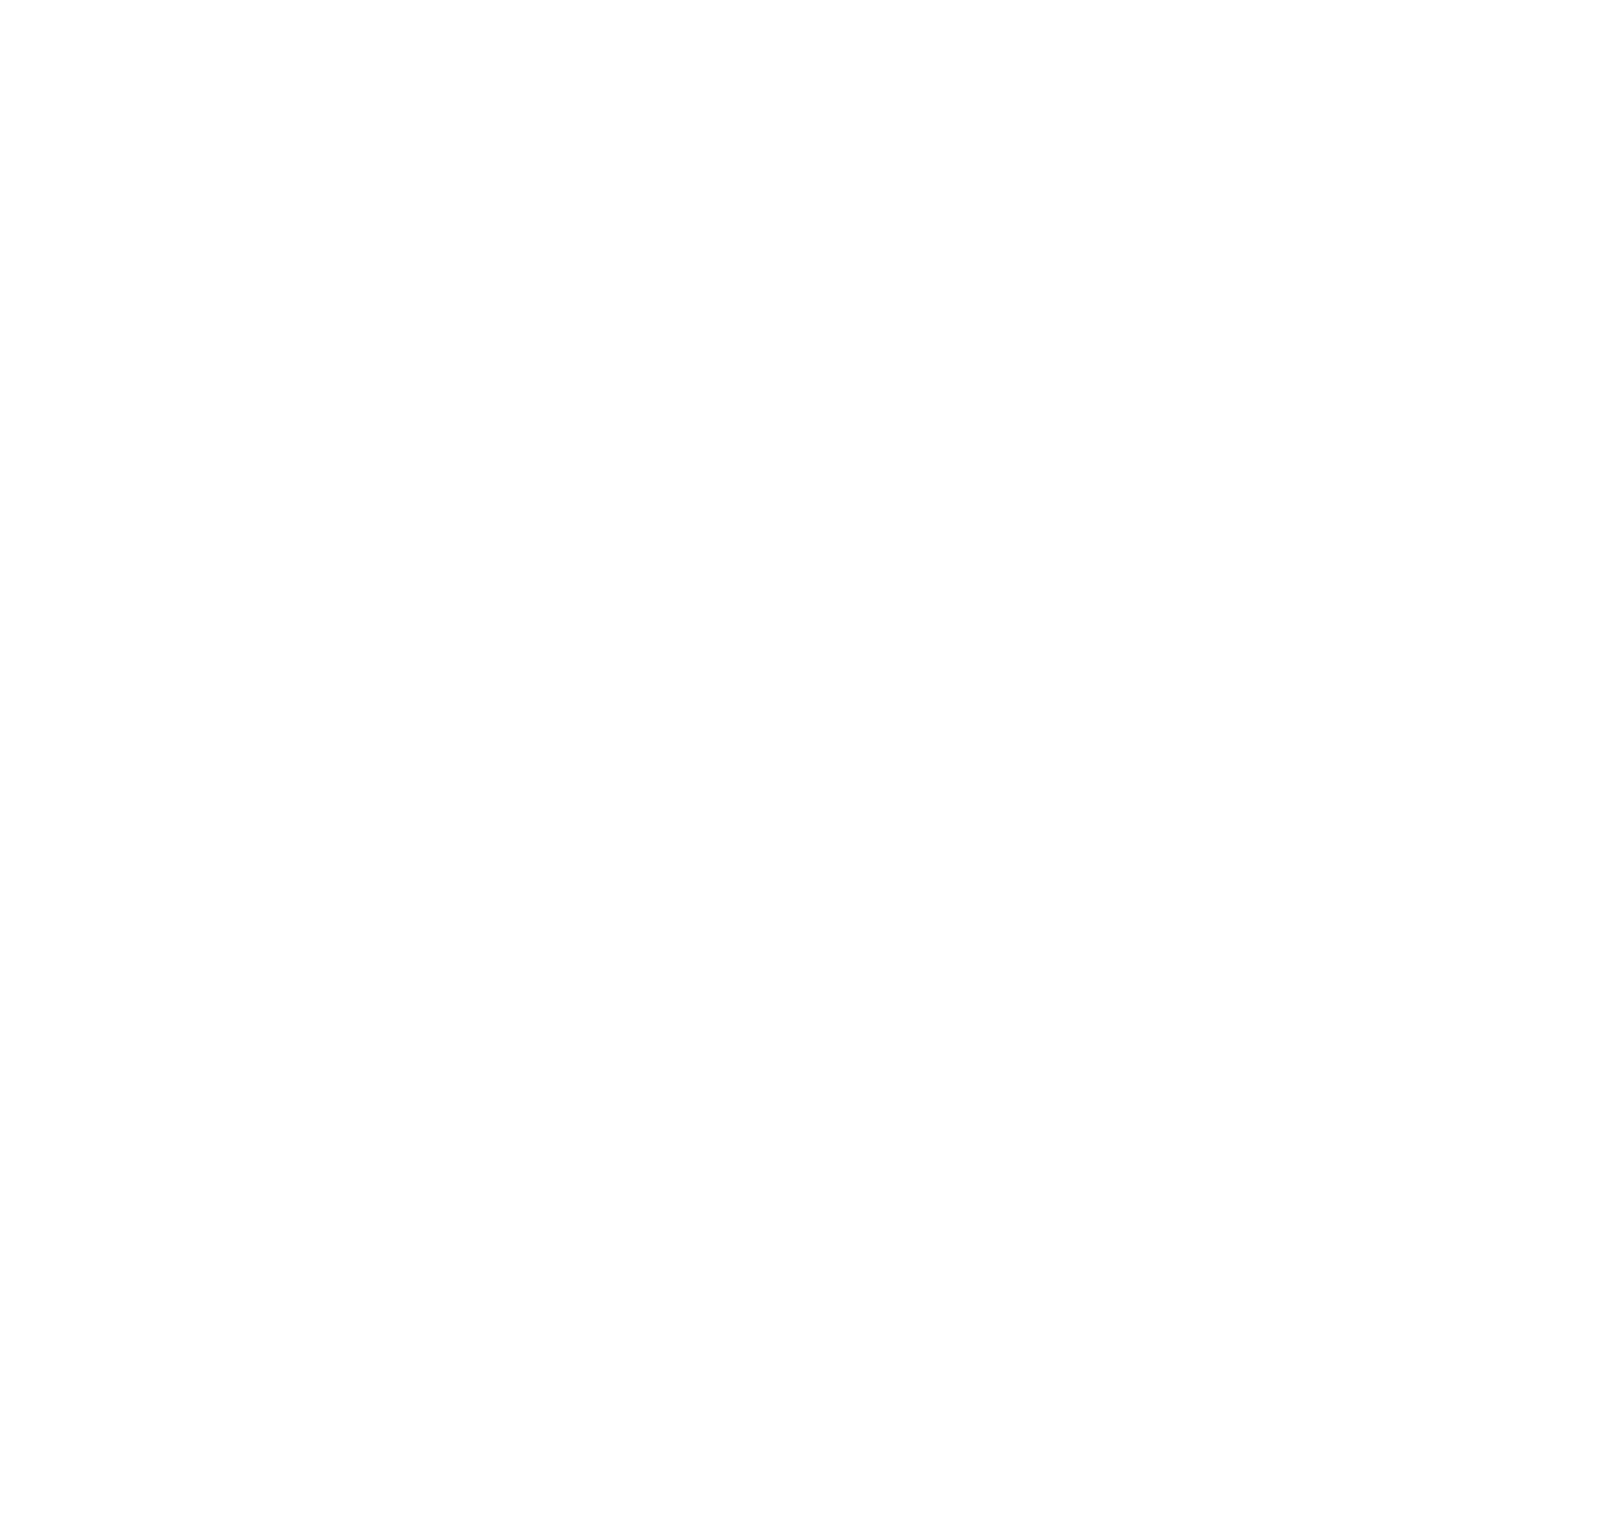 Bono Cultural Joven - Centro Niemeyer